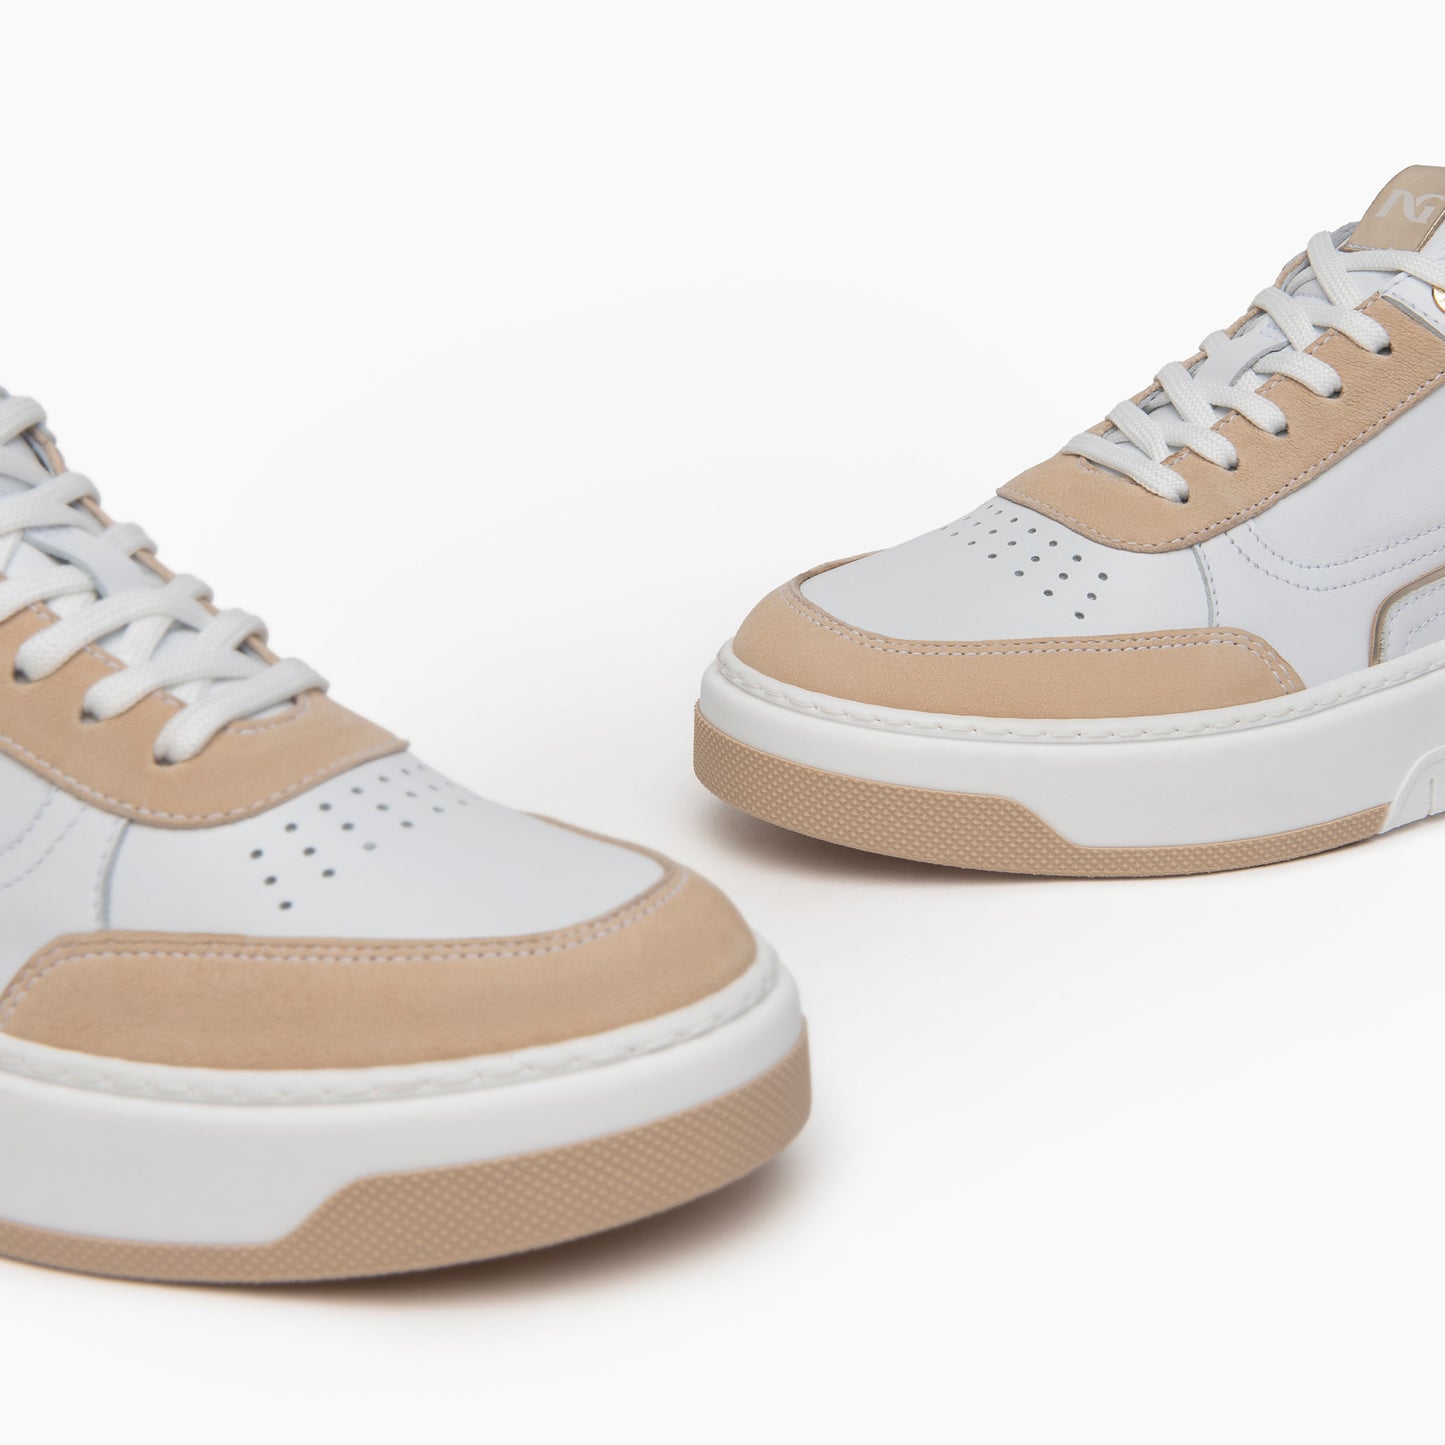 Nero Giardini Tan & White Sneaker